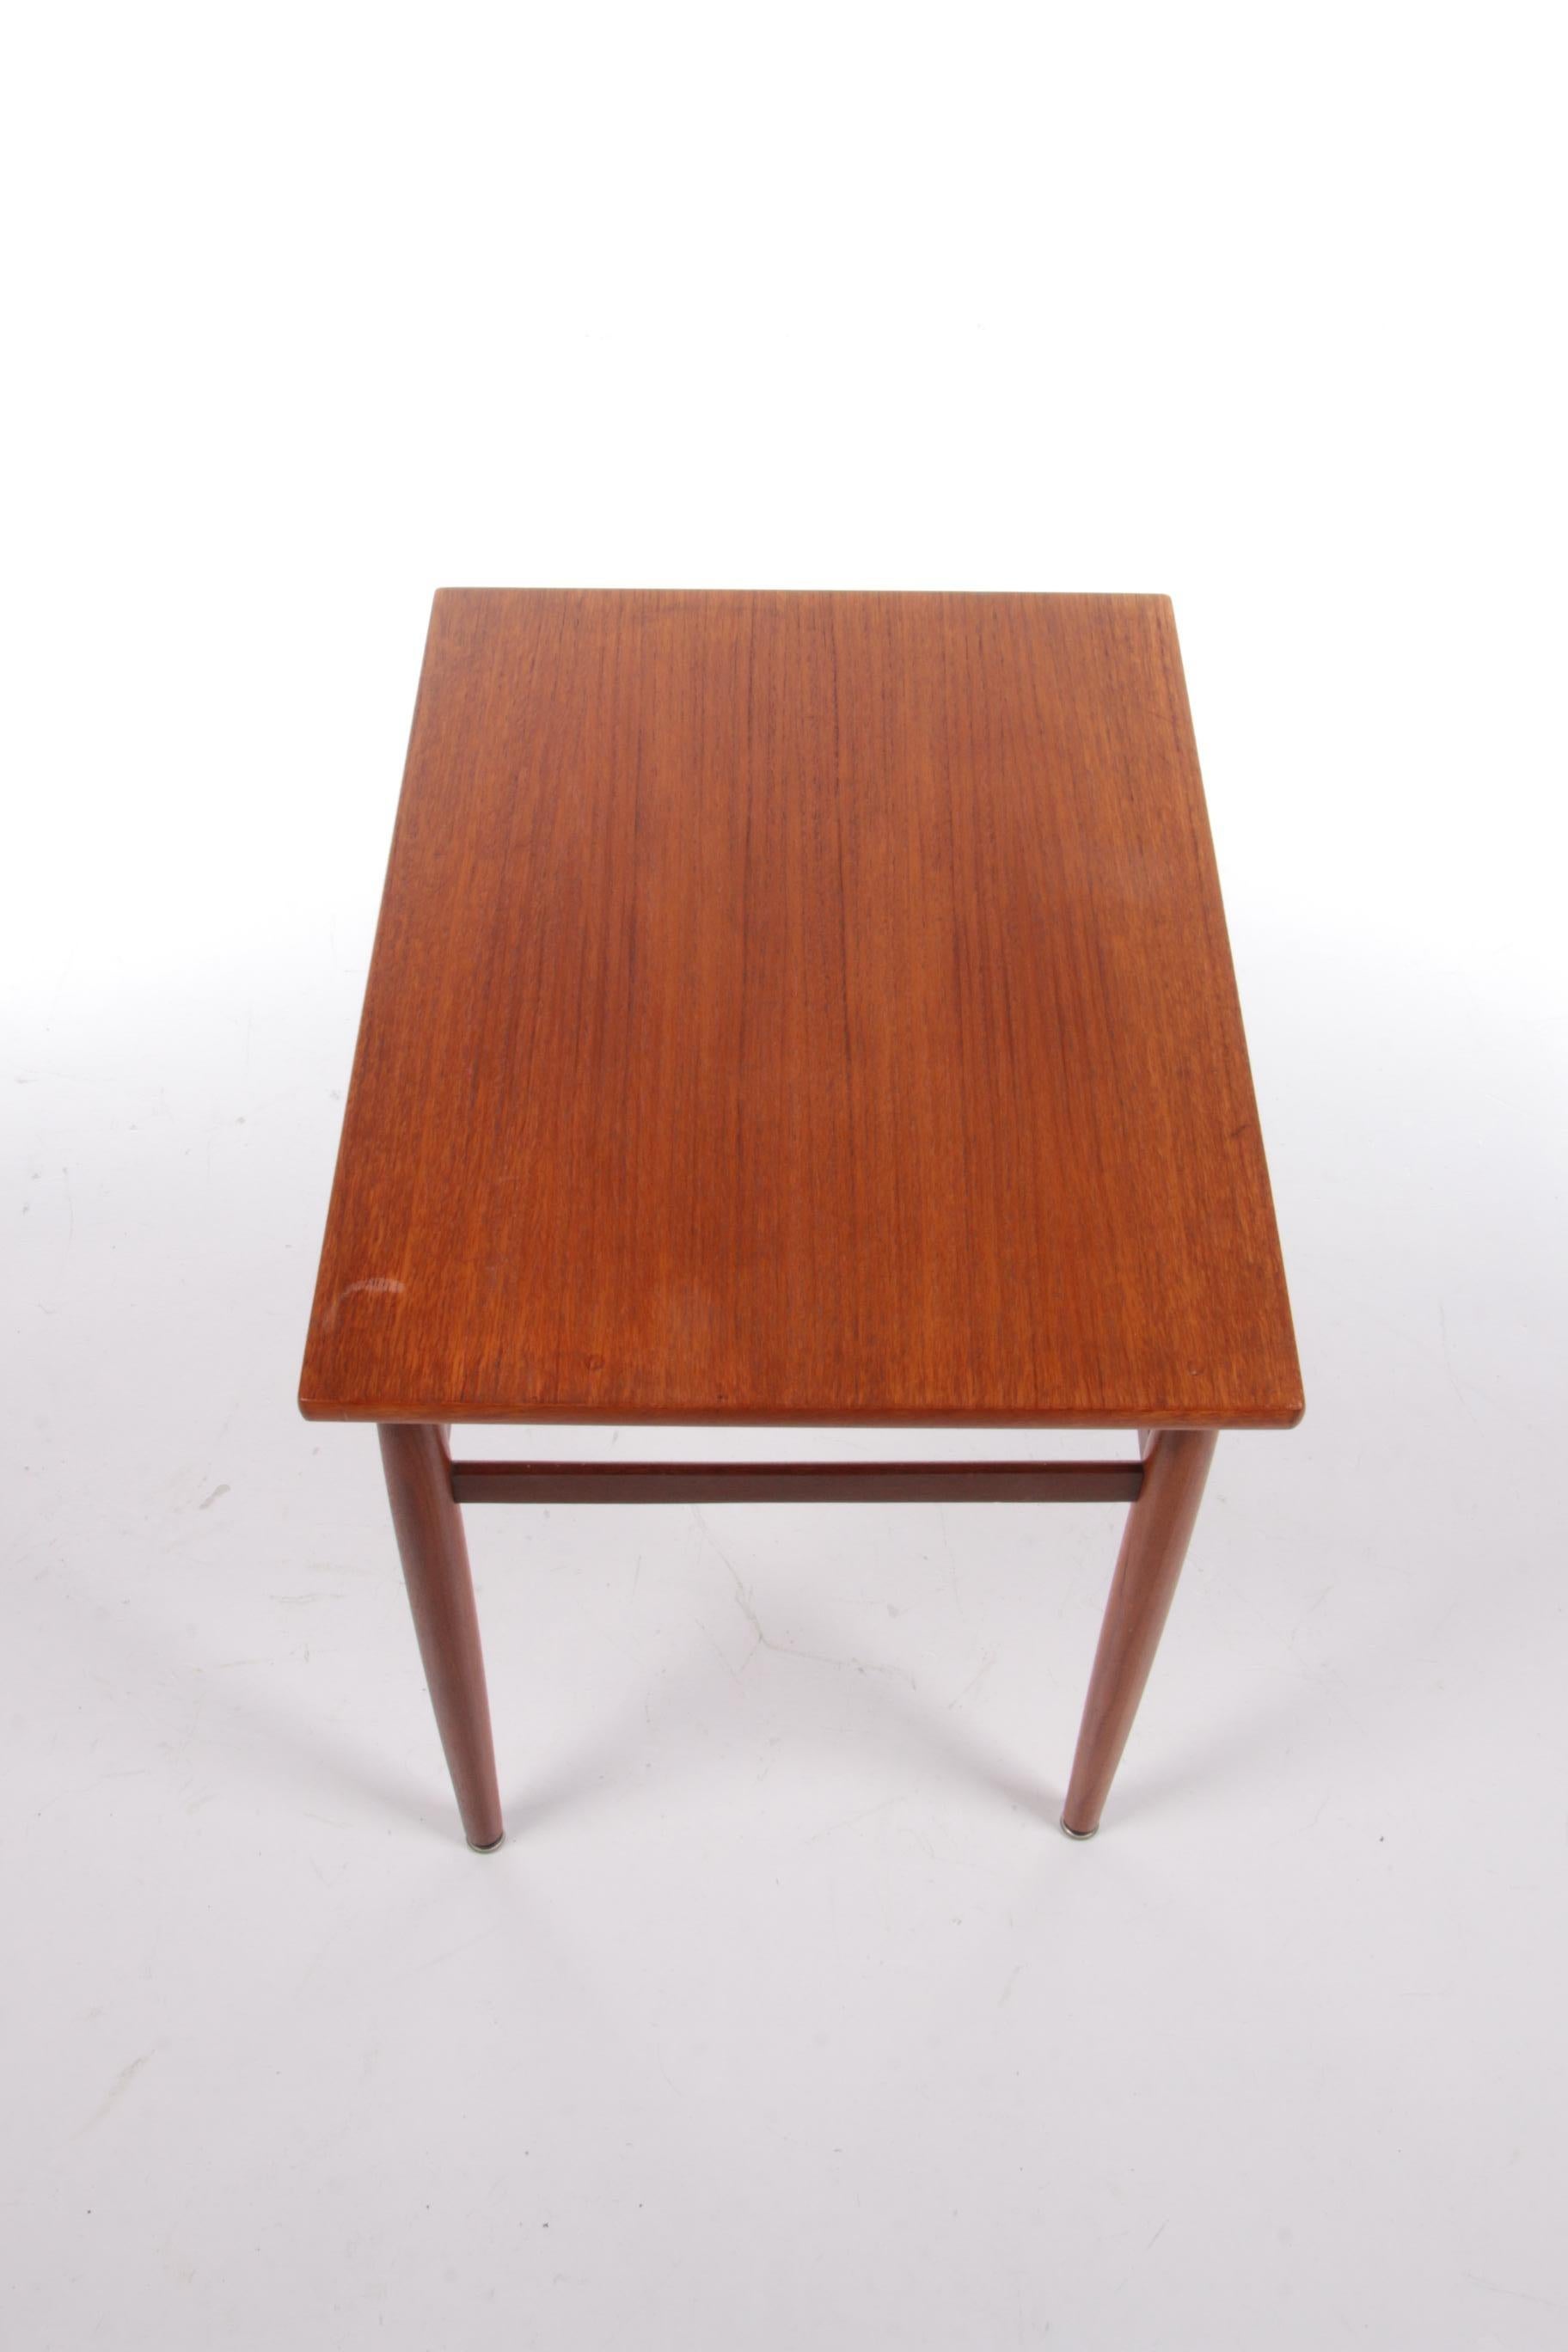 Vintage Teak Wood Side Table, 1960s For Sale 3